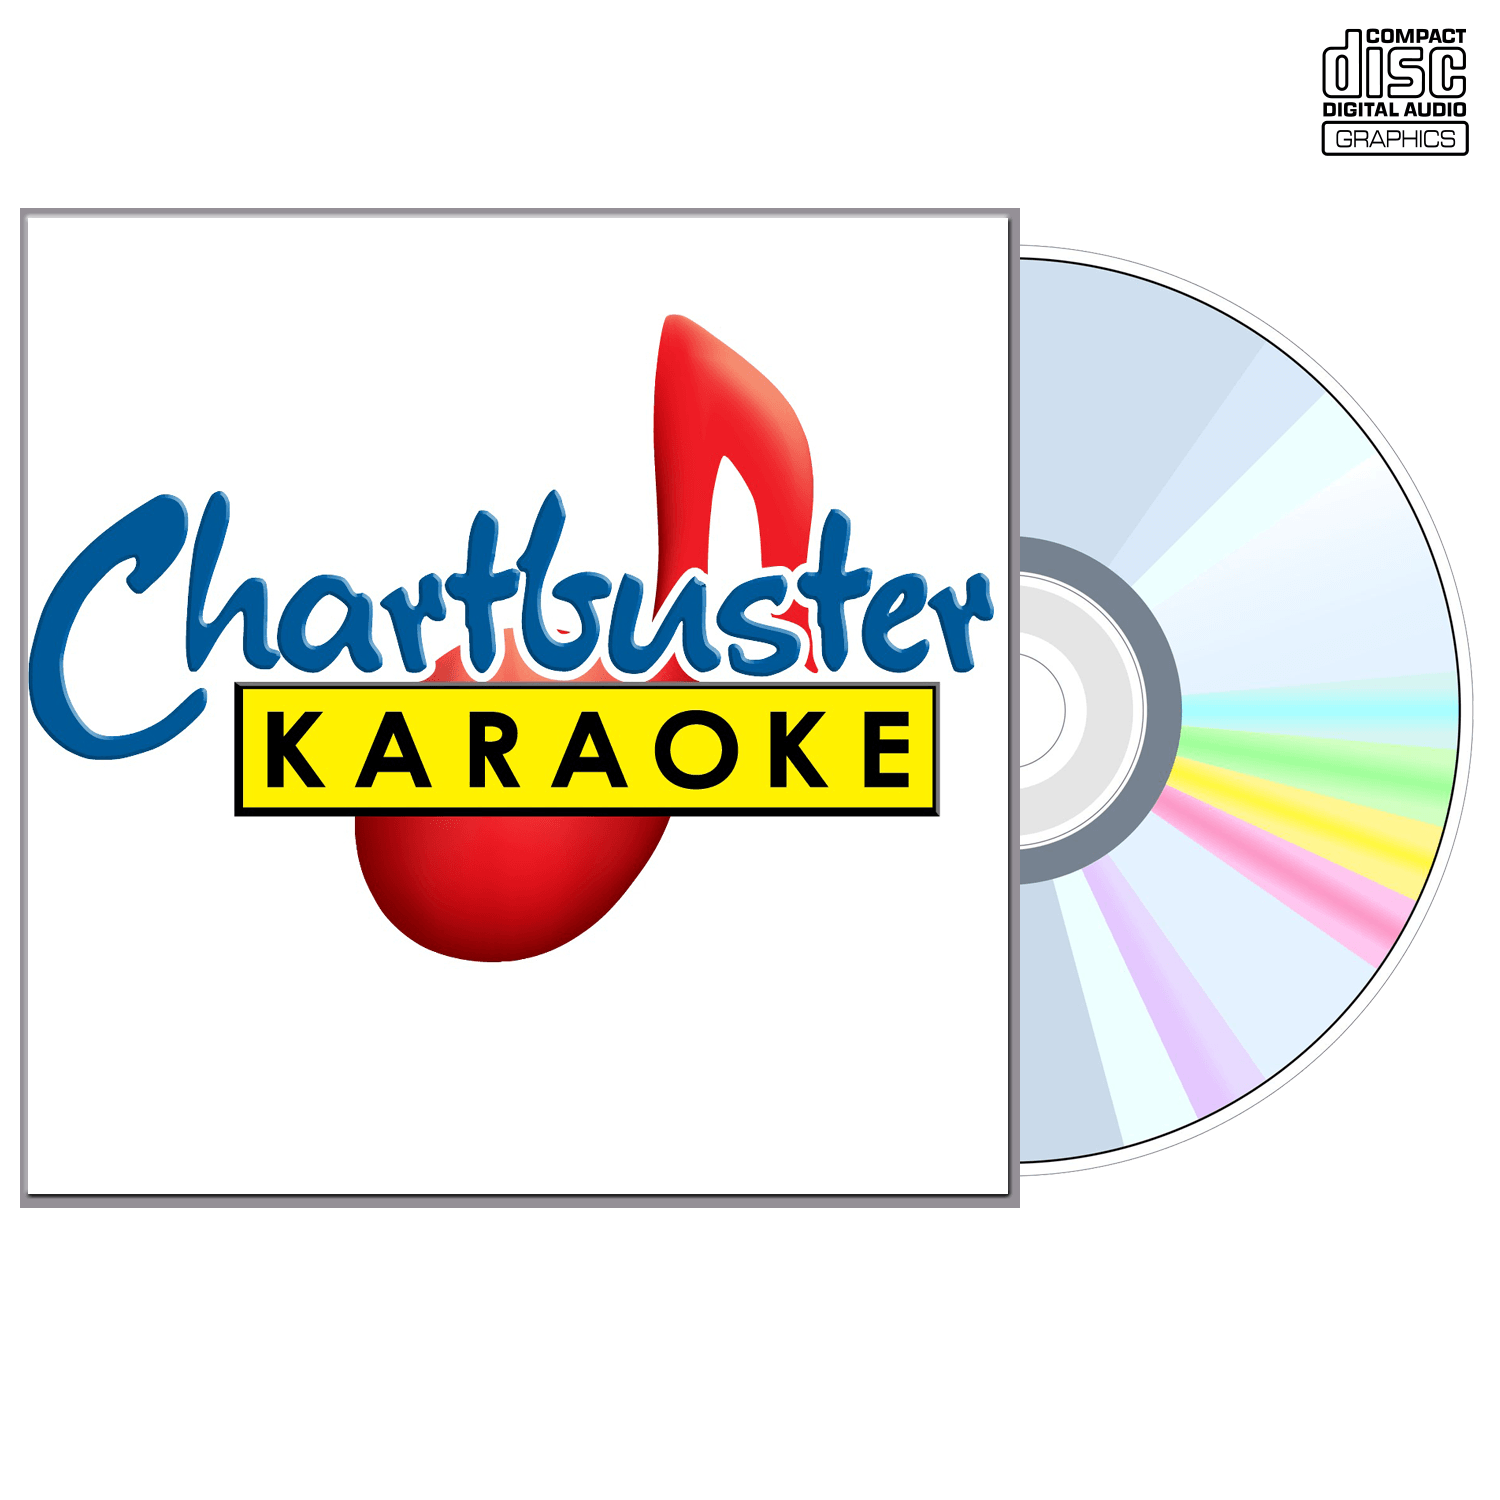 Backstreet Boys Vol 1 - CD+G - Chartbuster Karaoke - Karaoke Home Entertainment